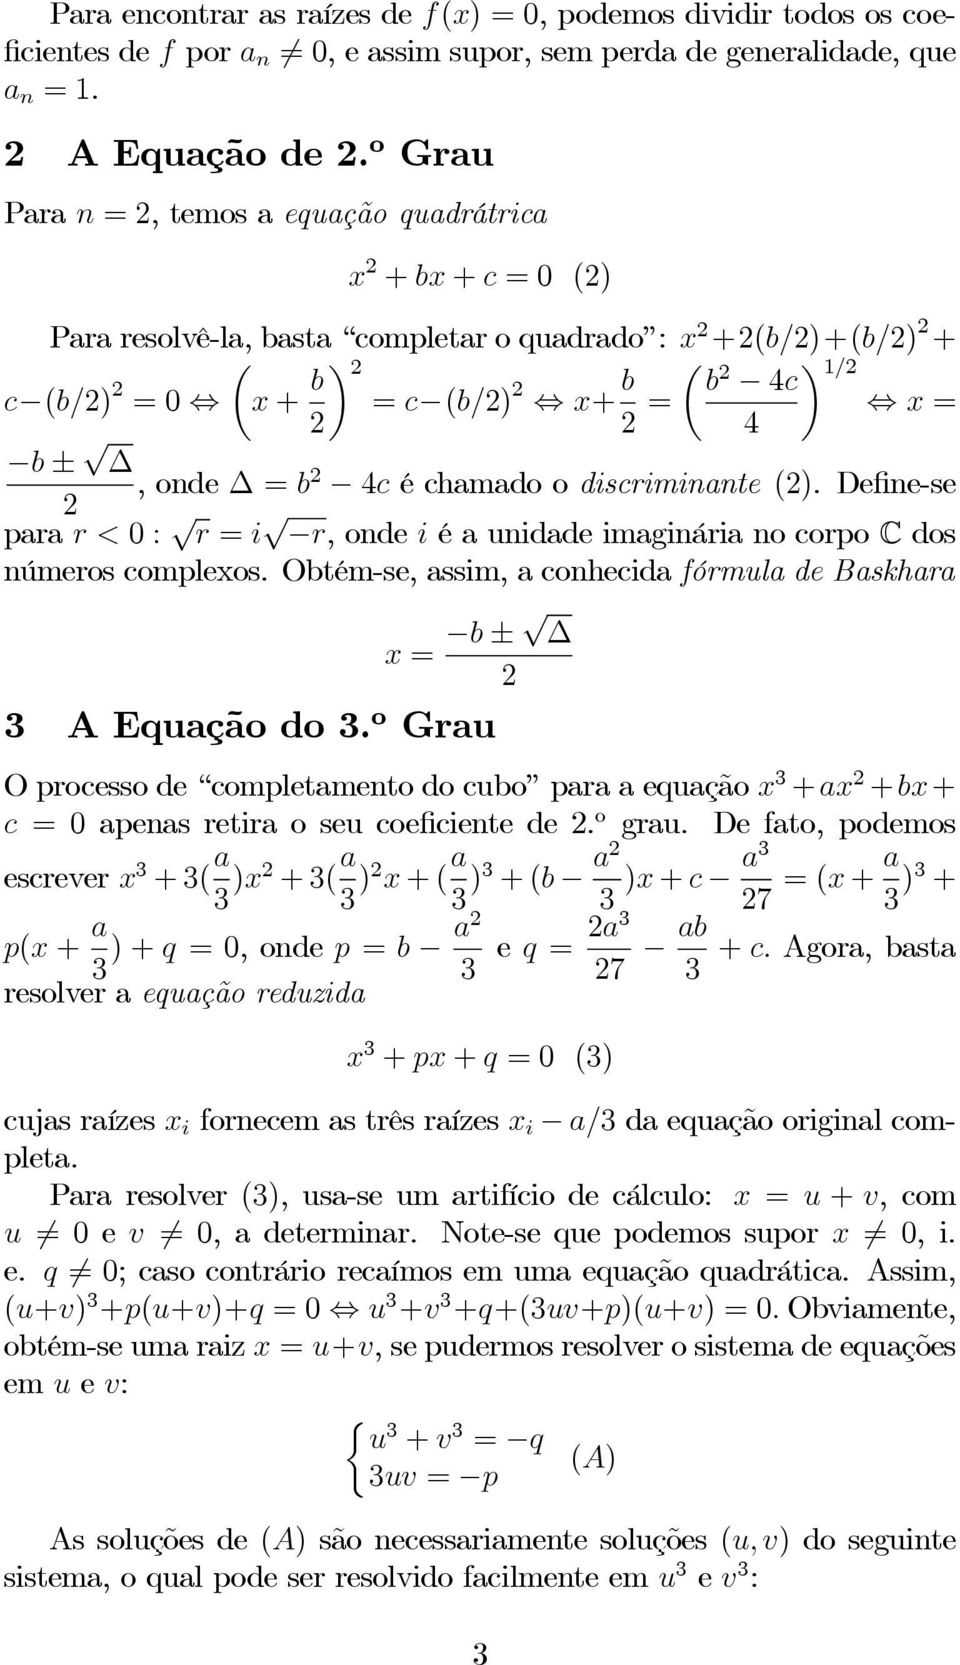 discriminante (). Define-se para r<0: r = i r, ondei é a unidade imaginária no corpo C dos números complexos. Obtém-se, assim, a conhecida fórmula de Baskhara x = b ± AEuaçãodo.